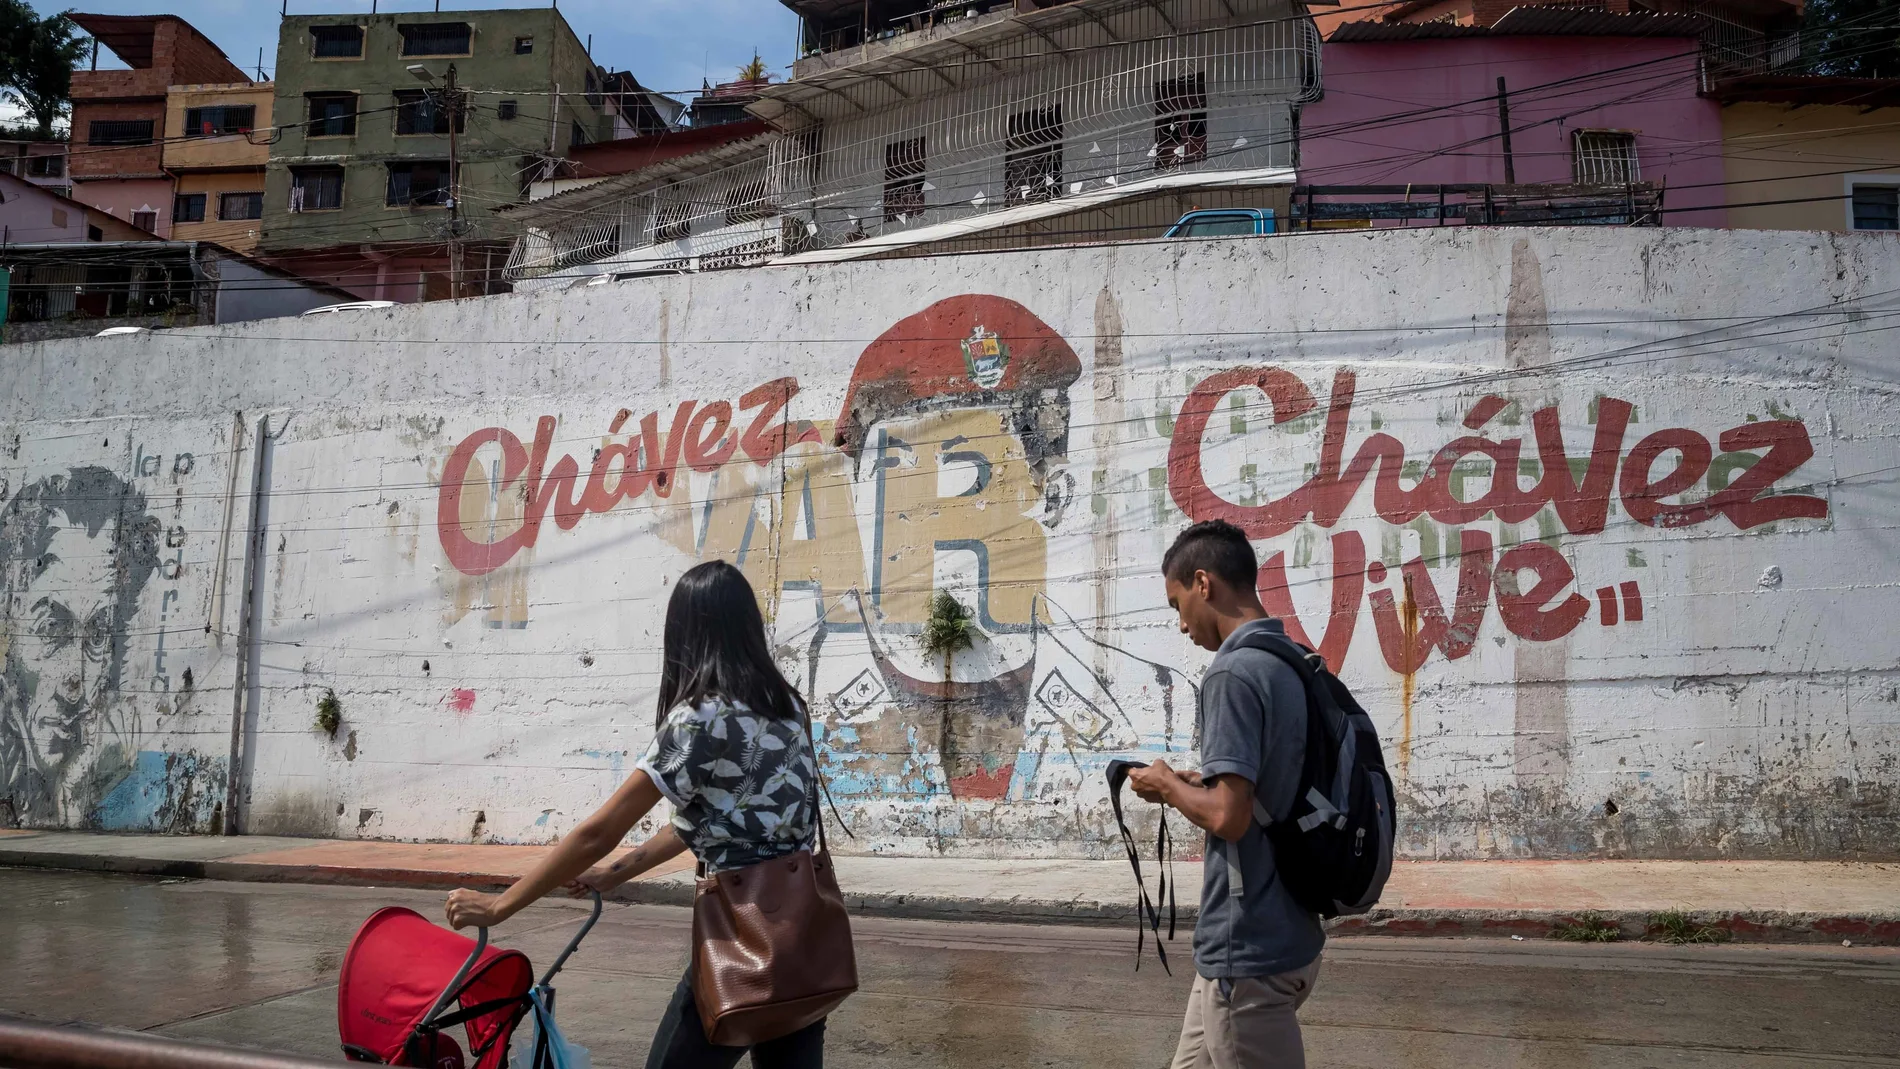 ACOMPAÑA CRÓNICA: VENEZUELA ARTE AME4039. CARACAS (VENEZUELA), 28/10/2020.- Fotografía que muestra un dibujo desgastado del fallecido líder venezolano Hugo Chávez, en la pared de contención en el sector "23 de Enero", el 20 de octubre de 2020 en Caracas (Venezuela). Si Venezuela era en la década de 1950 un país por poblar, los caraqueños asumieron que la capital era un lienzo por pintar. Y lo hicieron: artistas de vanguardia dejaron su sello en las calles en forma de mosaicos, esculturas y edificios que hoy dan paso a grafitis, algunos para propagar el arte y otros, la mayoría, para difundir ideas. EFE/Miguel Gutiérrez